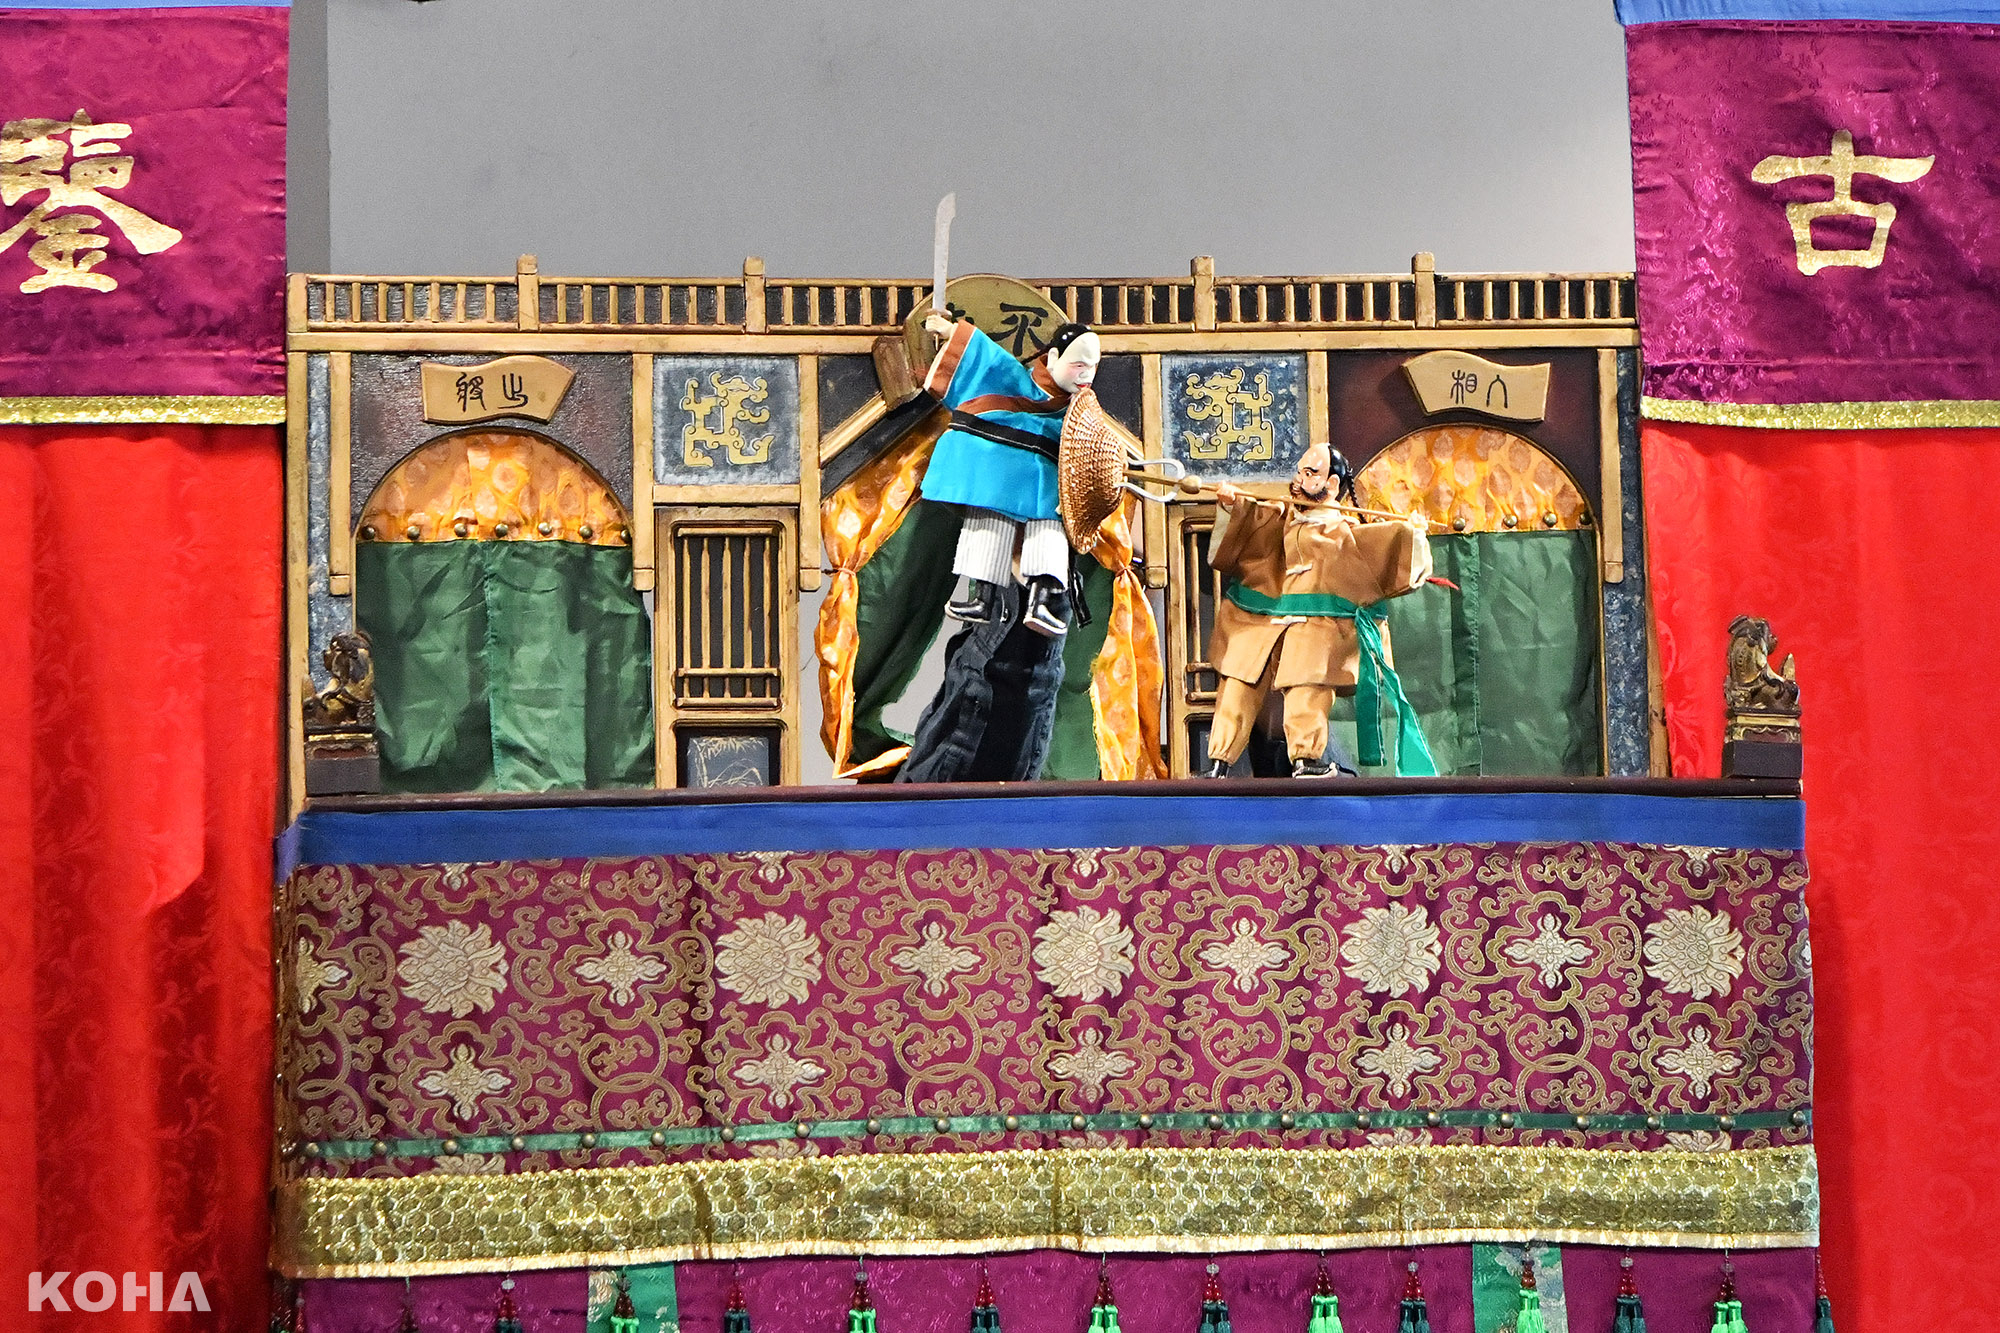 9.布袋戲台展不貳偶劇演出「迎熱鬧」表演各種廟會中的陣頭文化，此為宋江陣。